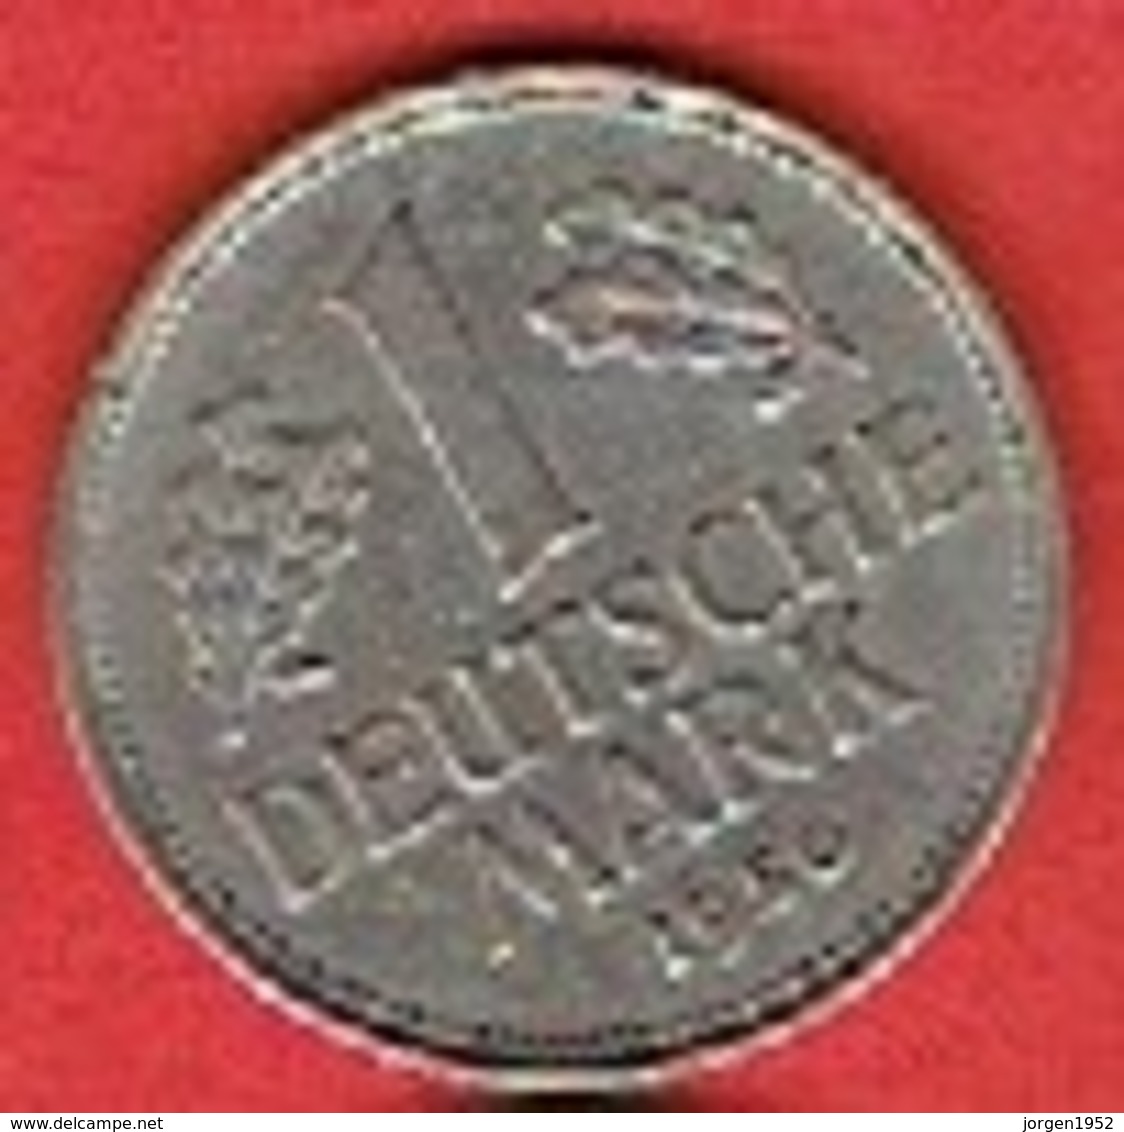 GERMANY # 1 MARK FROM 1950 - 1 Mark